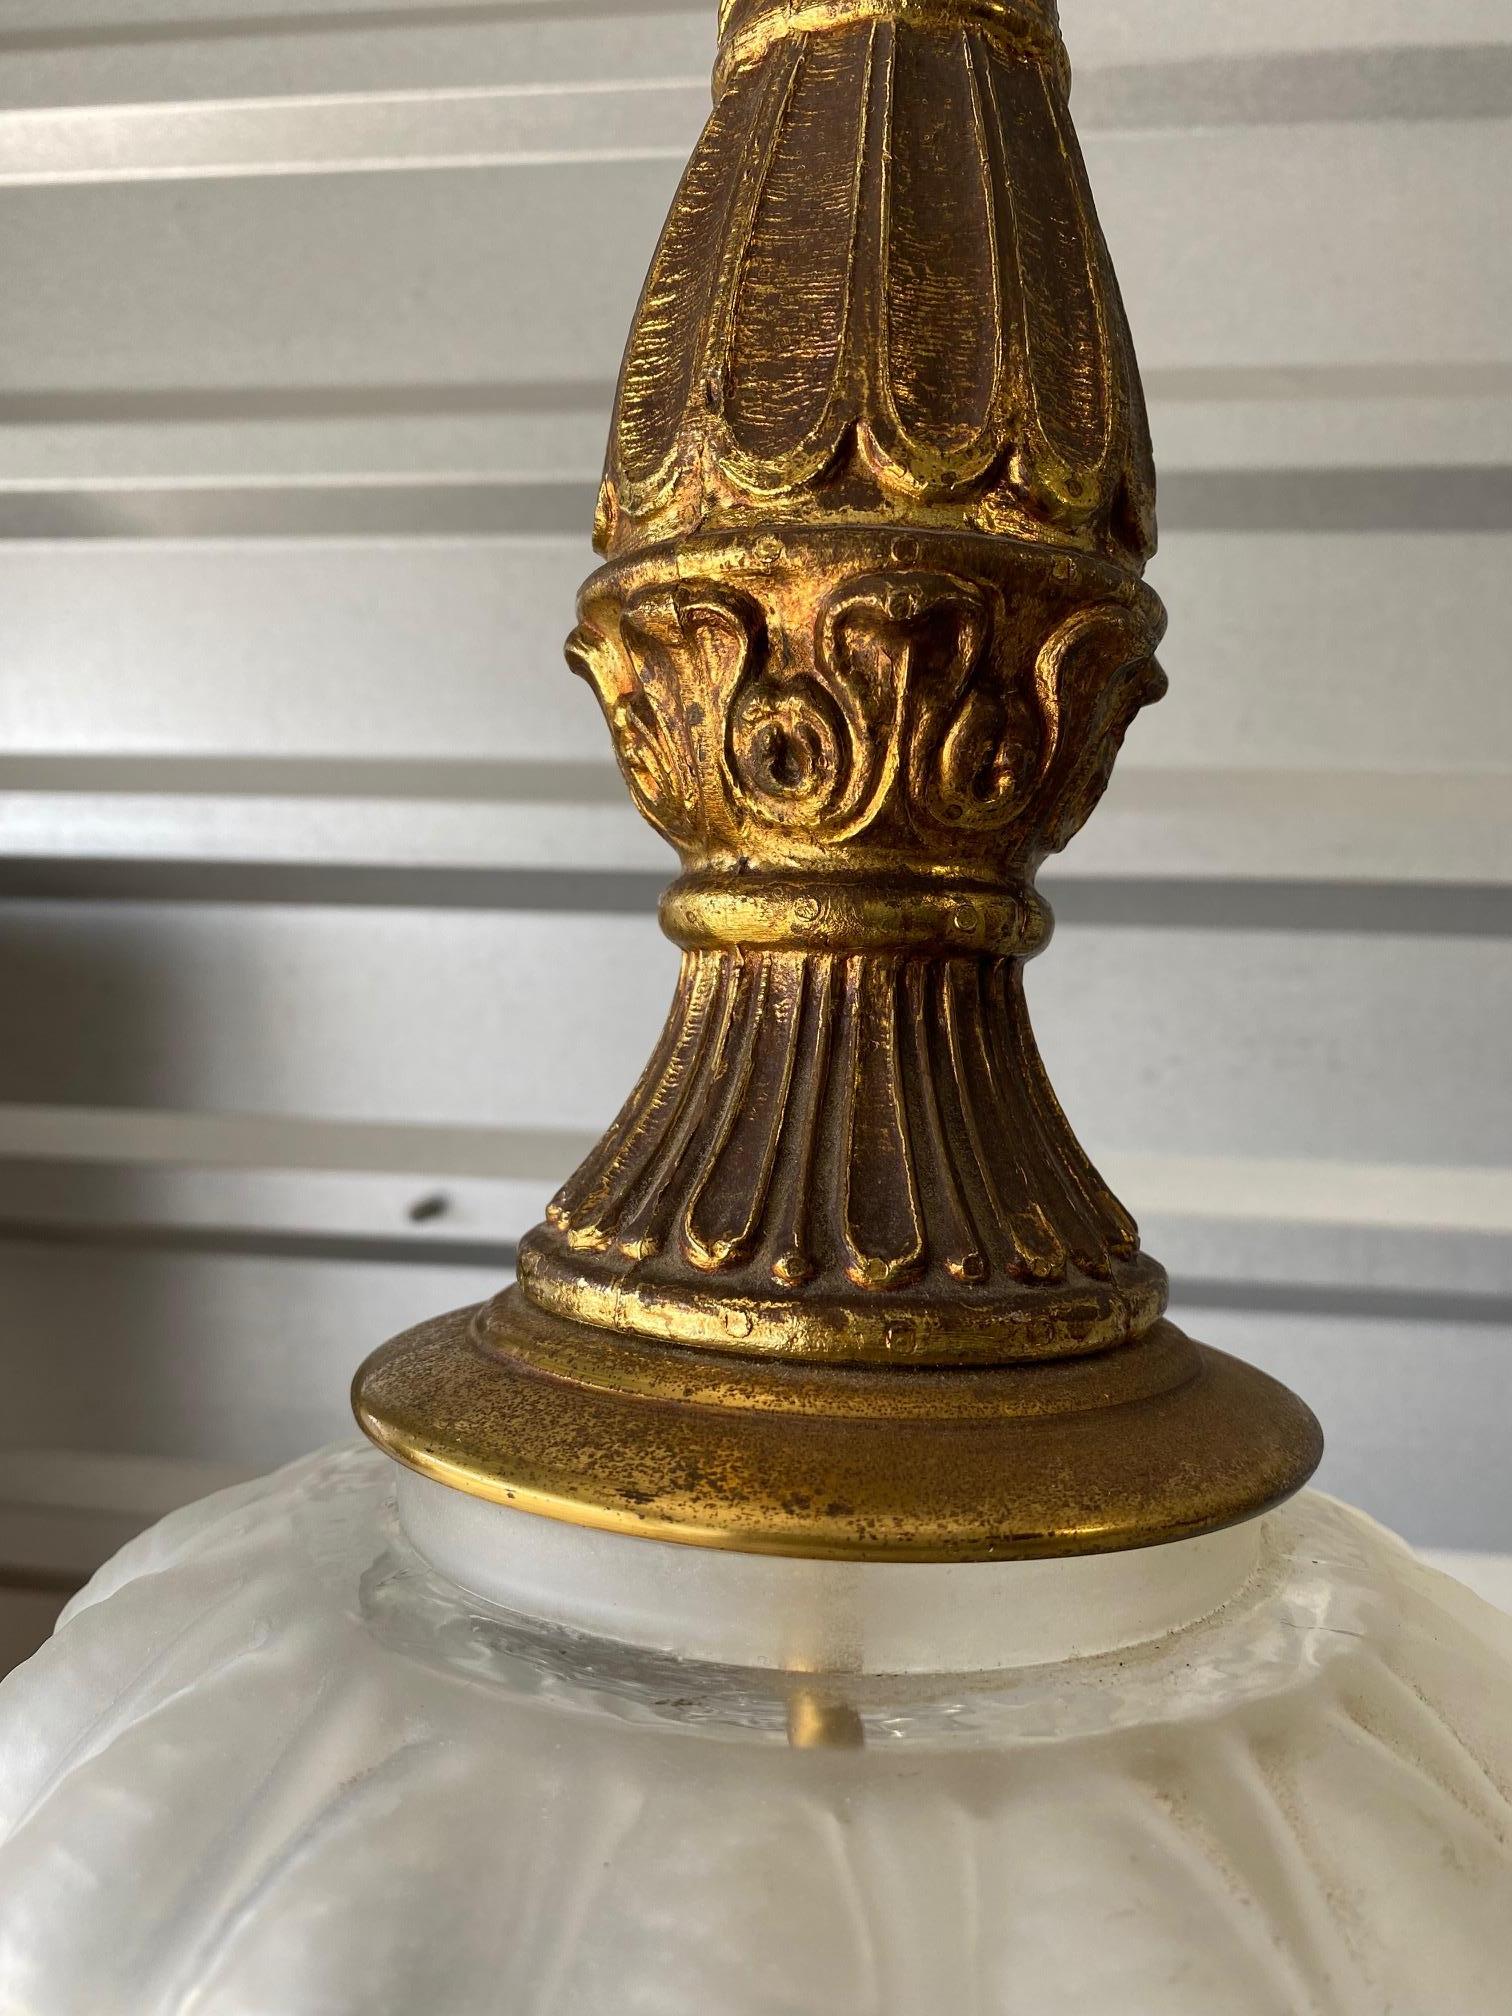 Diese wunderschöne, überdimensionale Lampe ist ein echter Hingucker in jedem Raum. Die Details in dem Stück sind phänomenal.